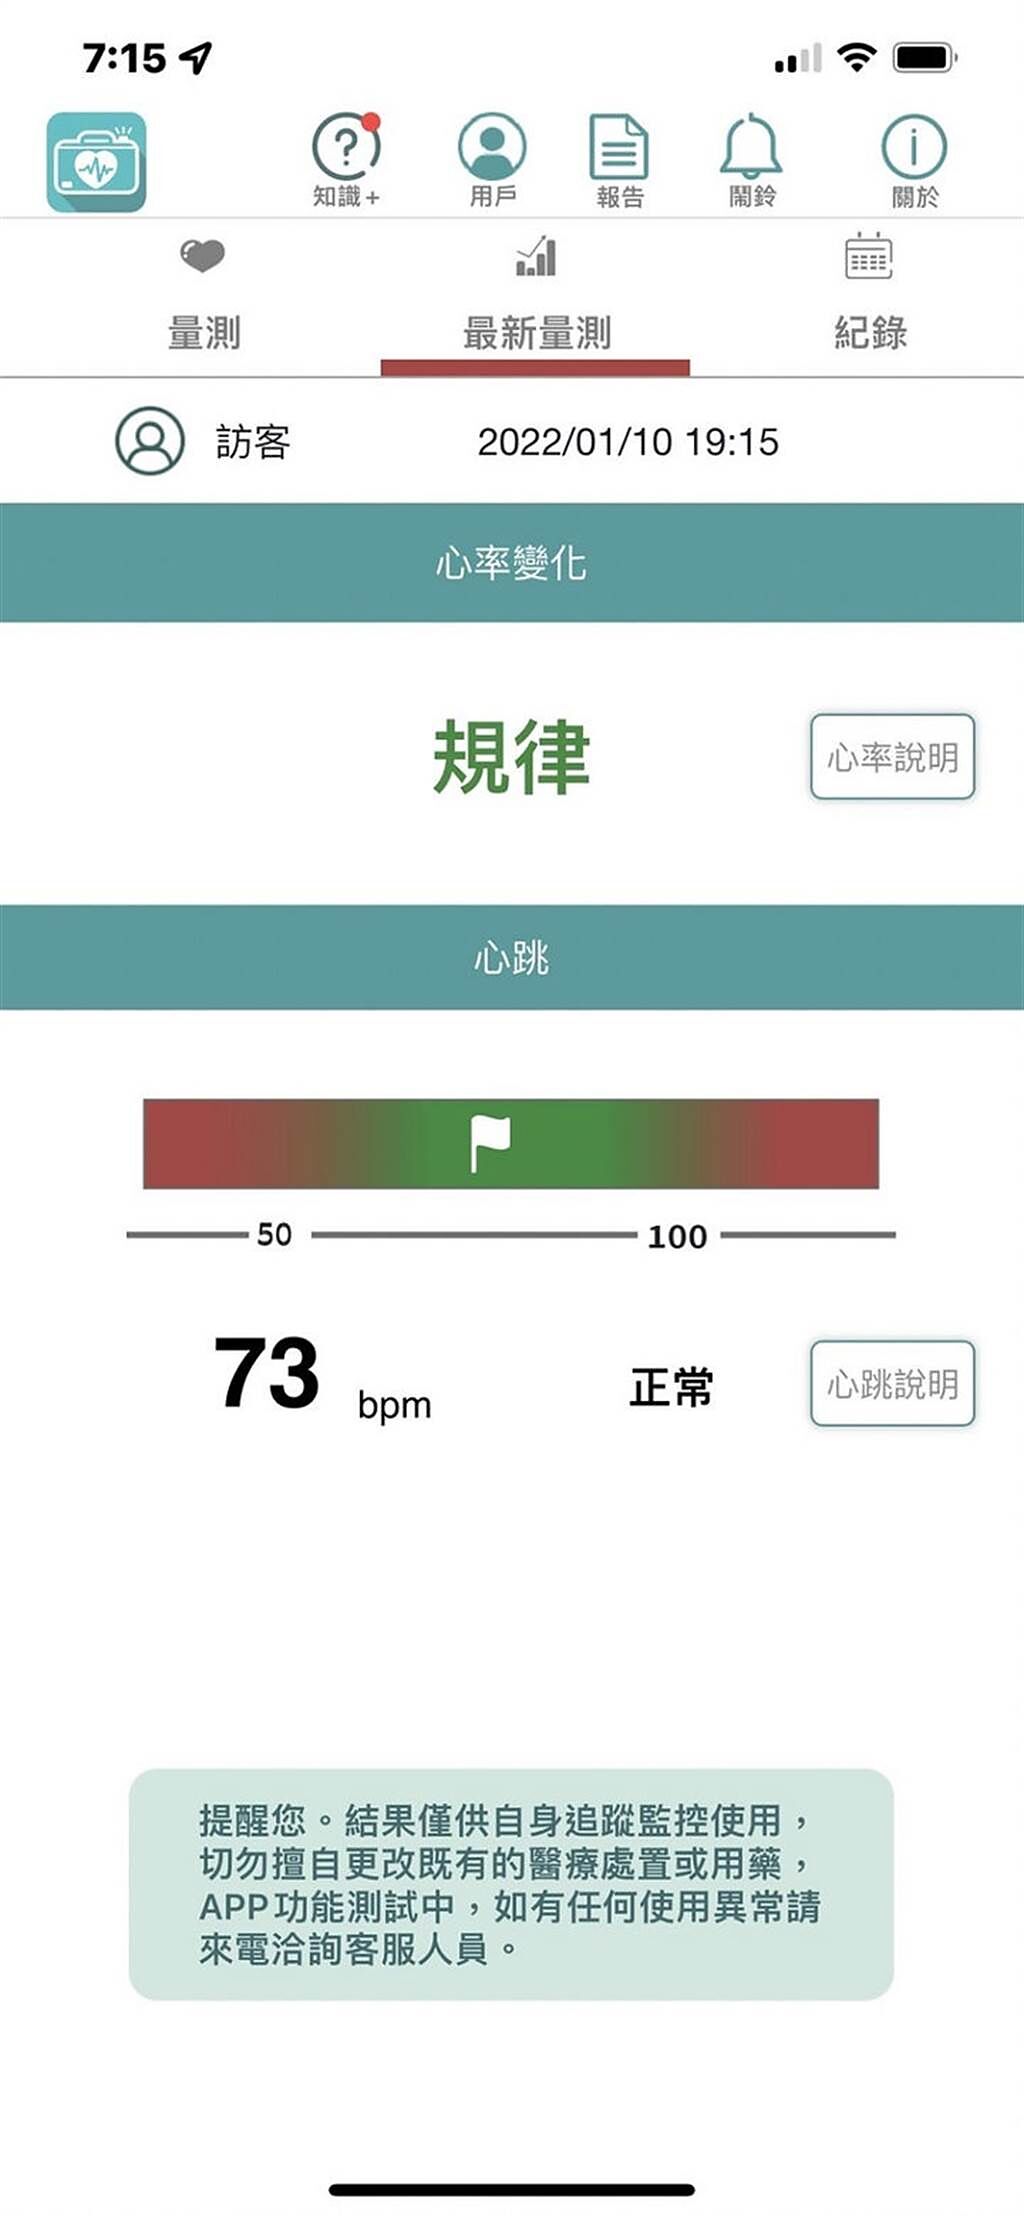 愛心鏡App偵測會呈現3種結果，分別為「不規律」、「規律」、和「訊號不佳」。(圖片來源/康健雜誌提供)